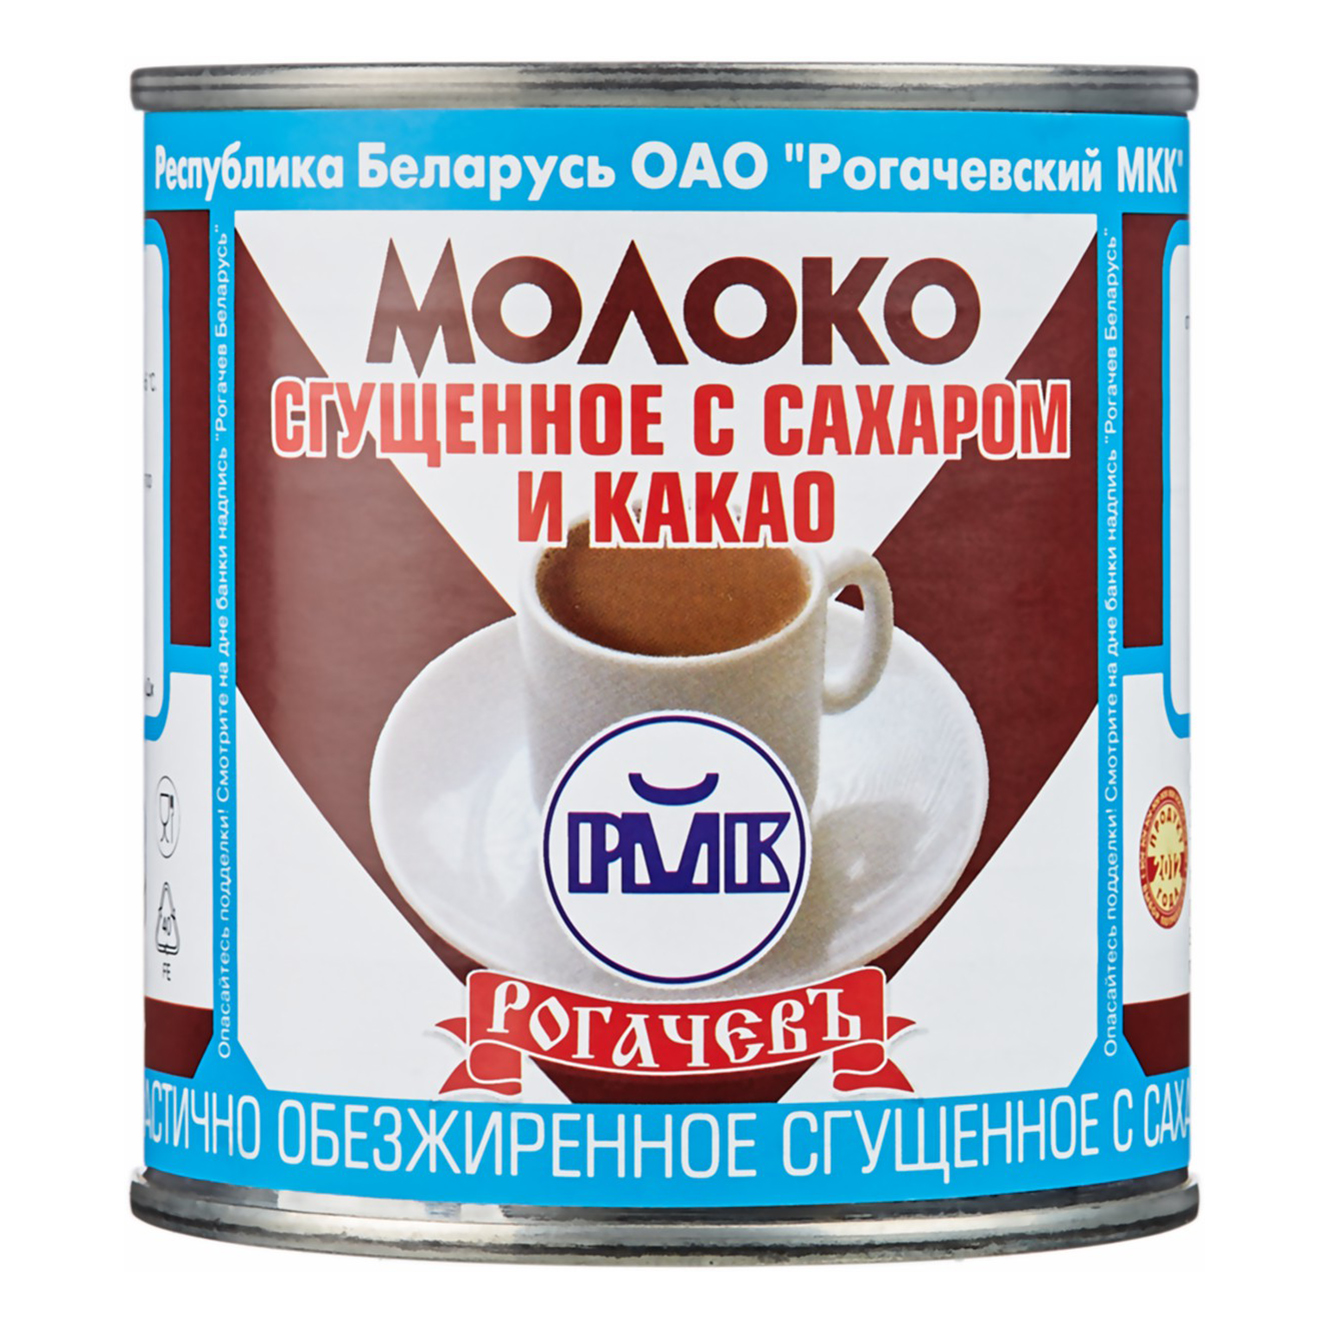 Фото Молочные консервы Молоко сгущенное с какао 7,5%, Рогачевъ, 380 г